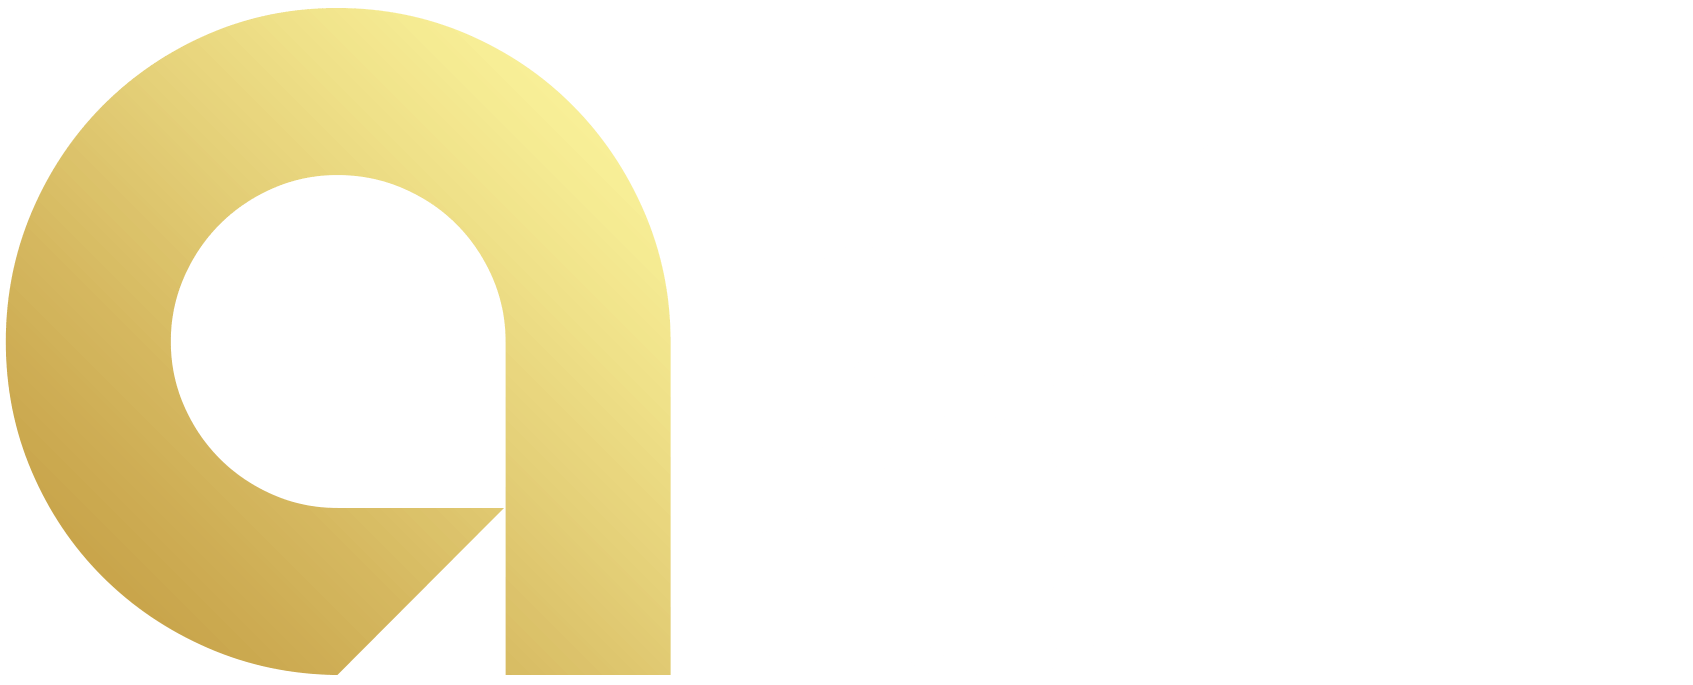 Austrailan Rewards Club